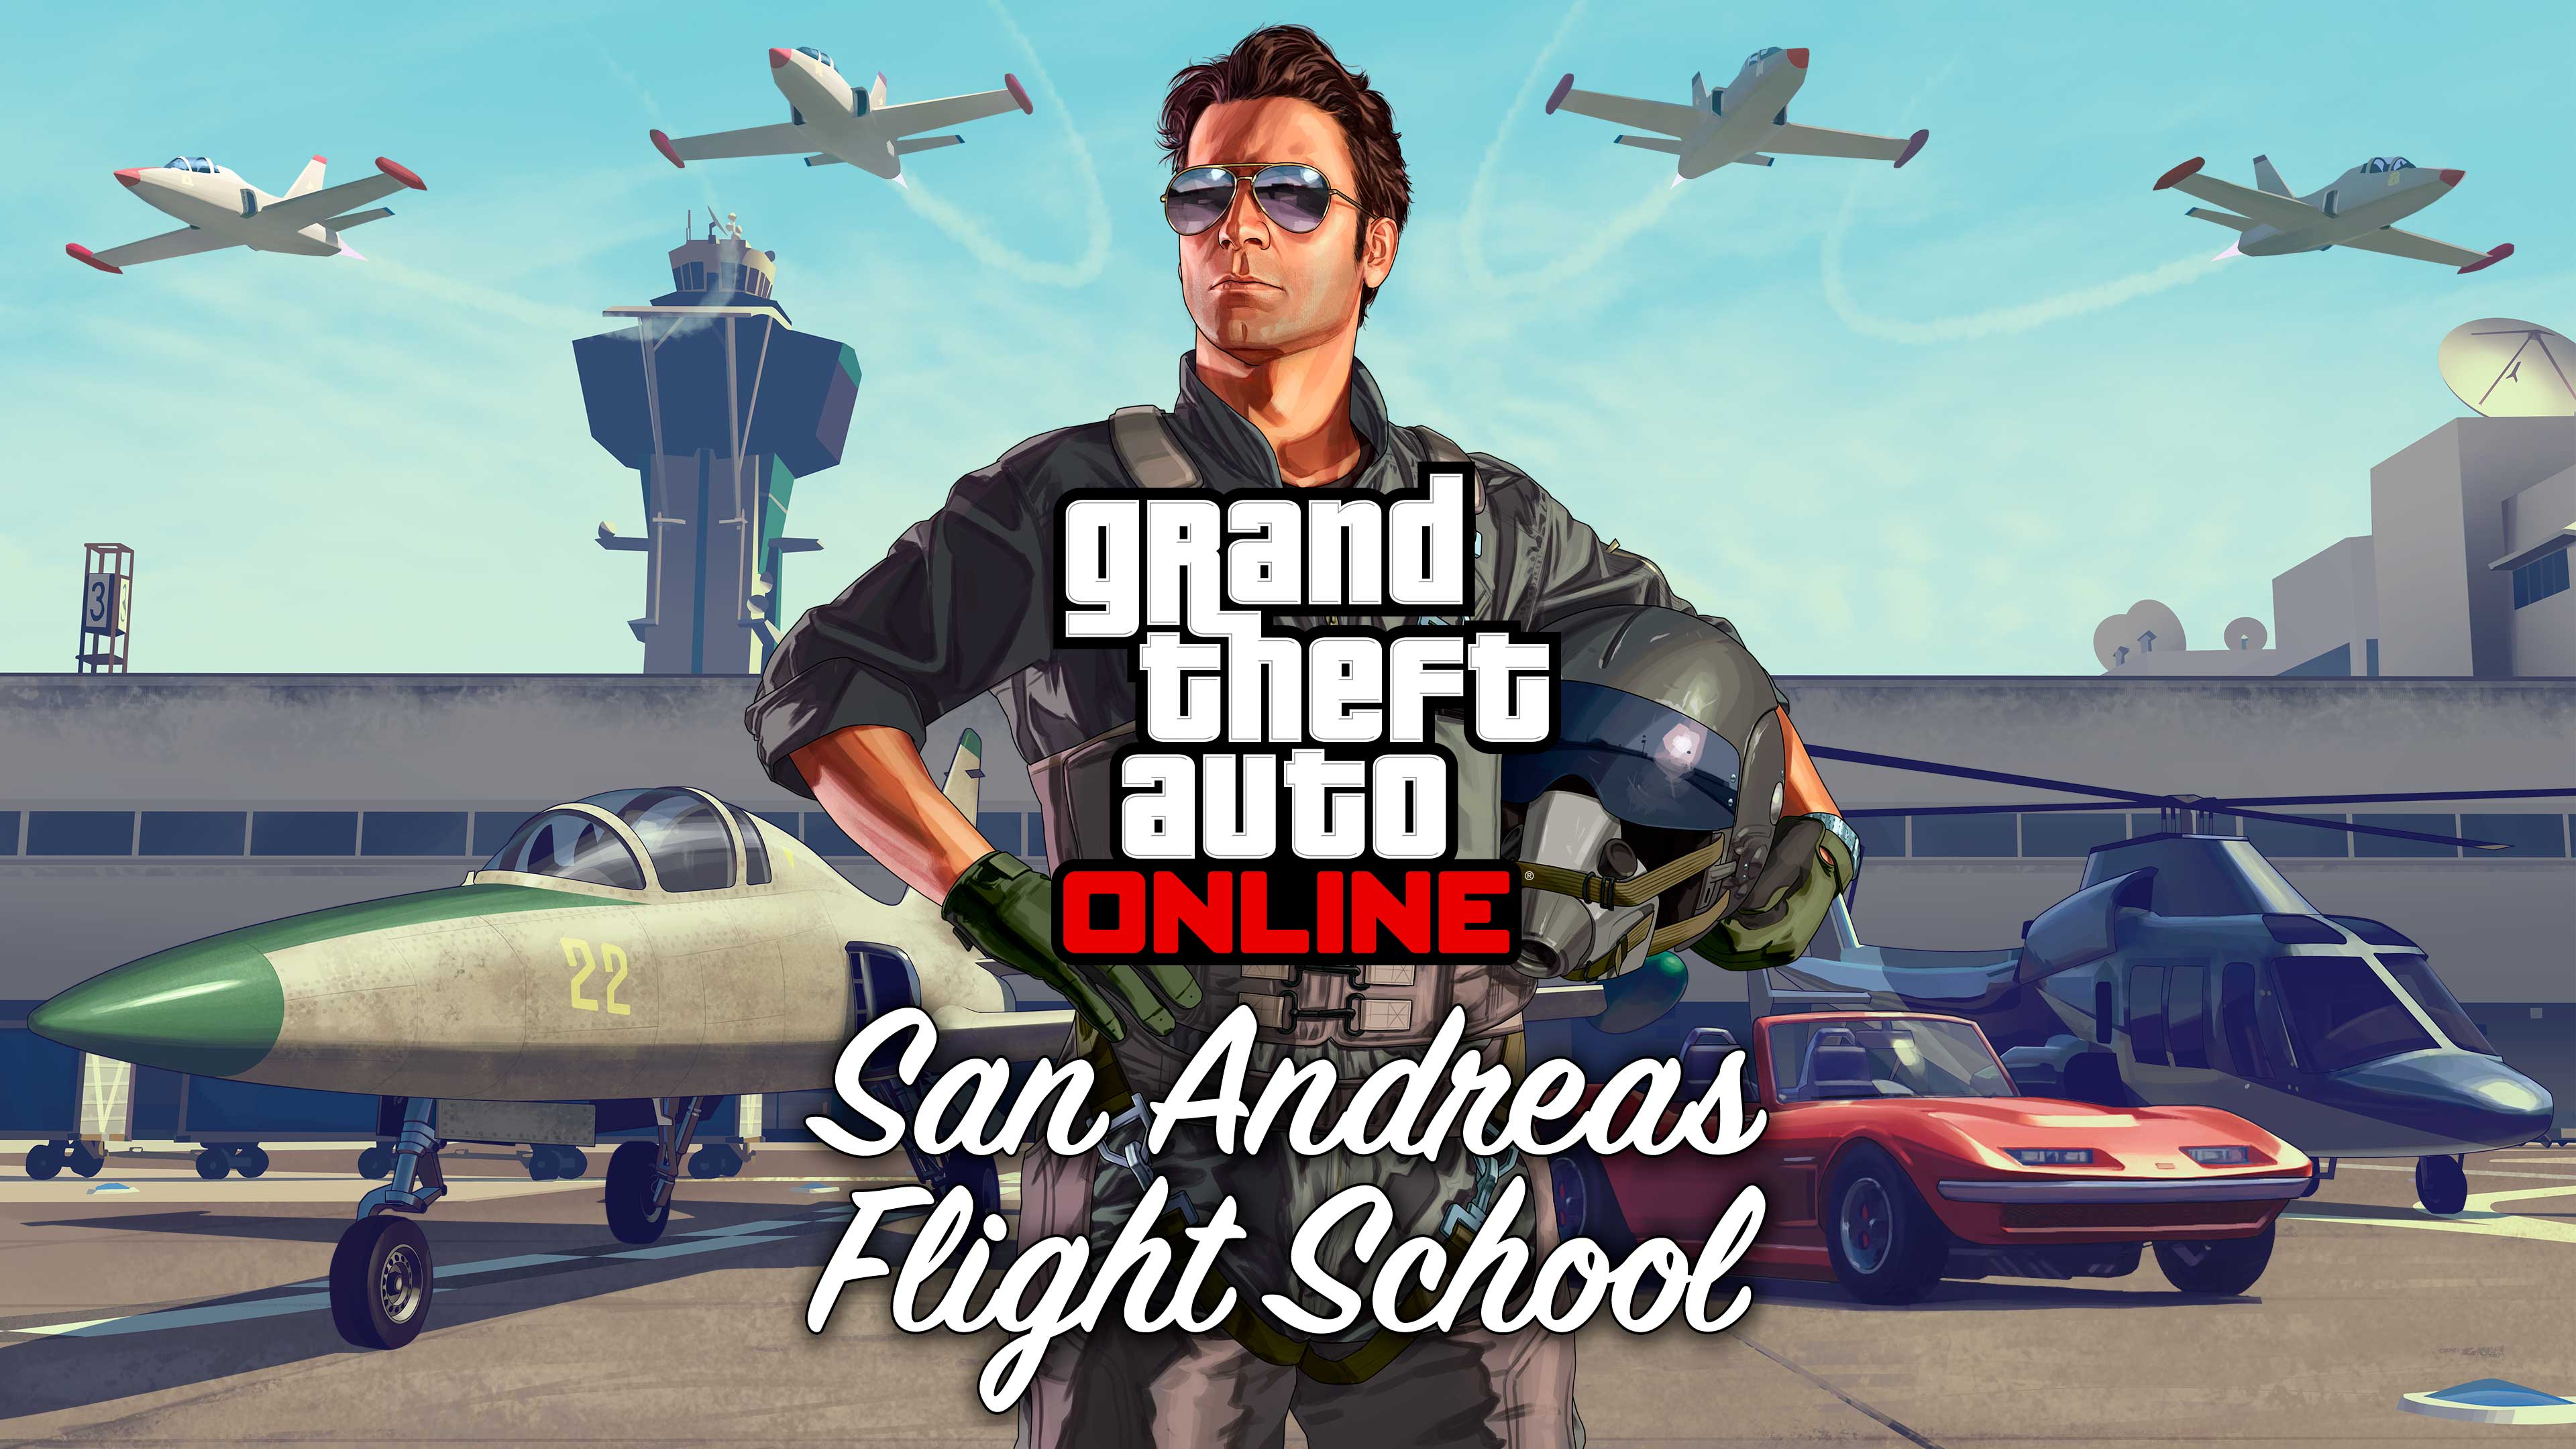 Illustrazione e logo della Scuola di volo di San Andreas di GTA Online